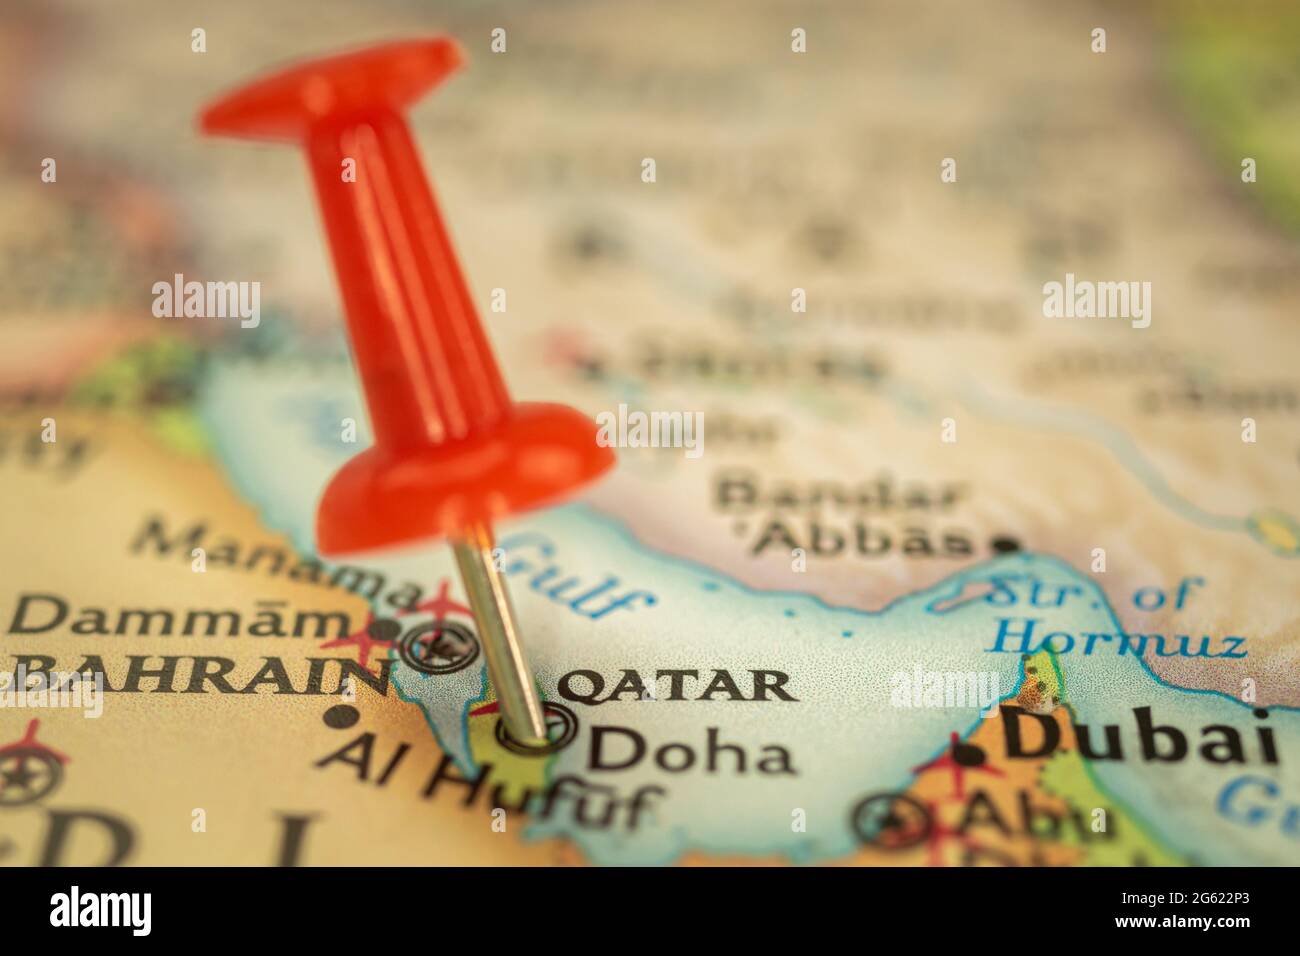 Posizione Qatar e Doha, mappa di viaggio con closeup segnapunto a spinta, concetto di viaggio in Asia Foto Stock